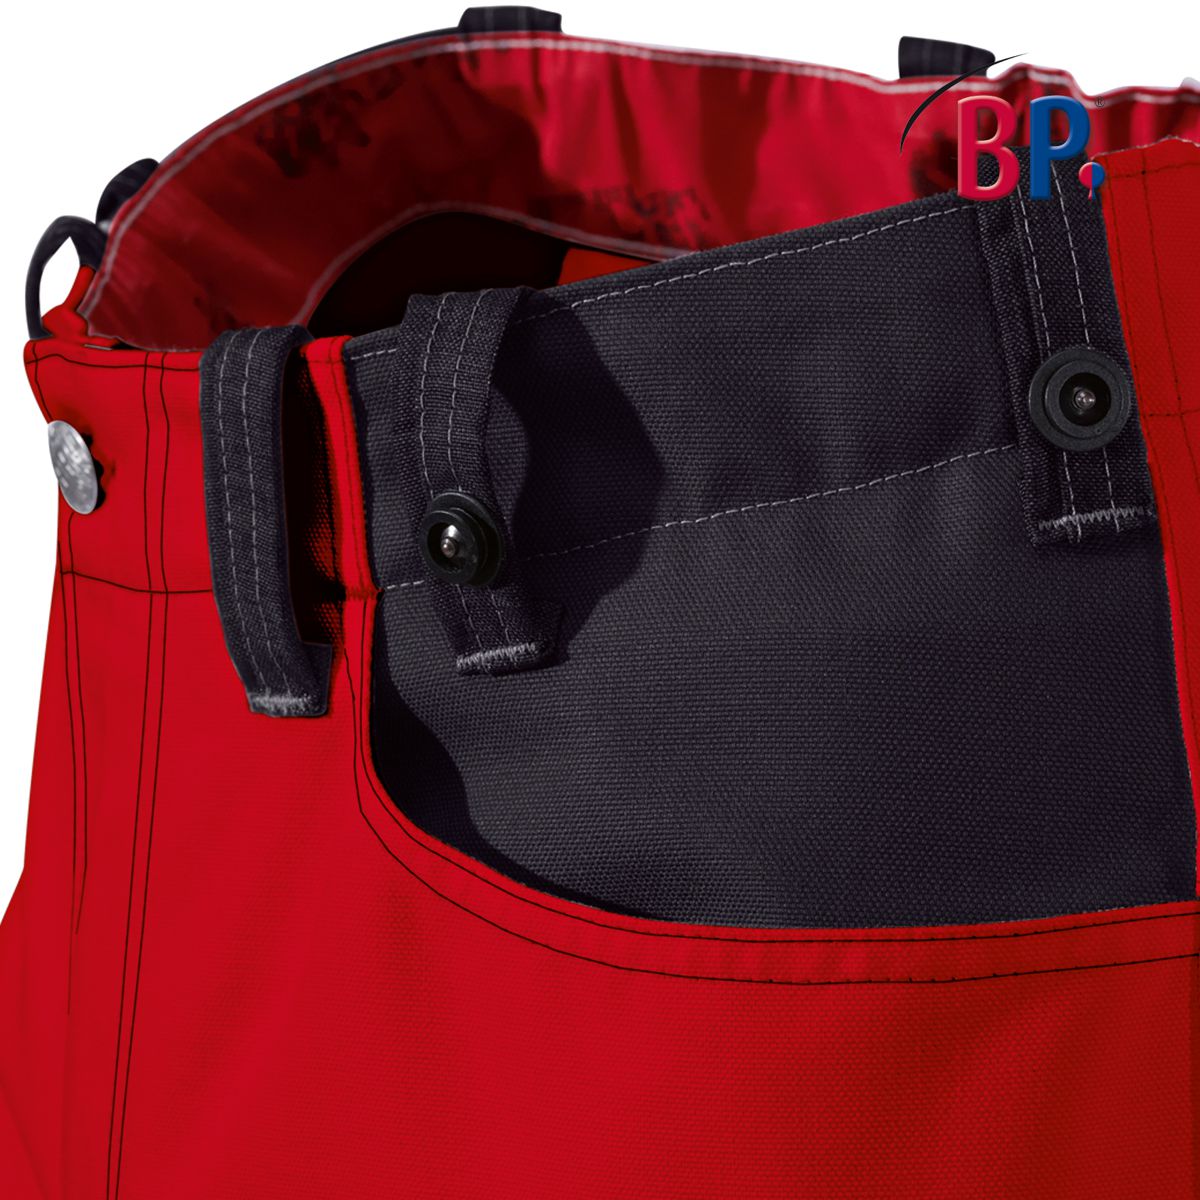 BP® Strapazierfähige Arbeitshose mit Kniepolstertaschen